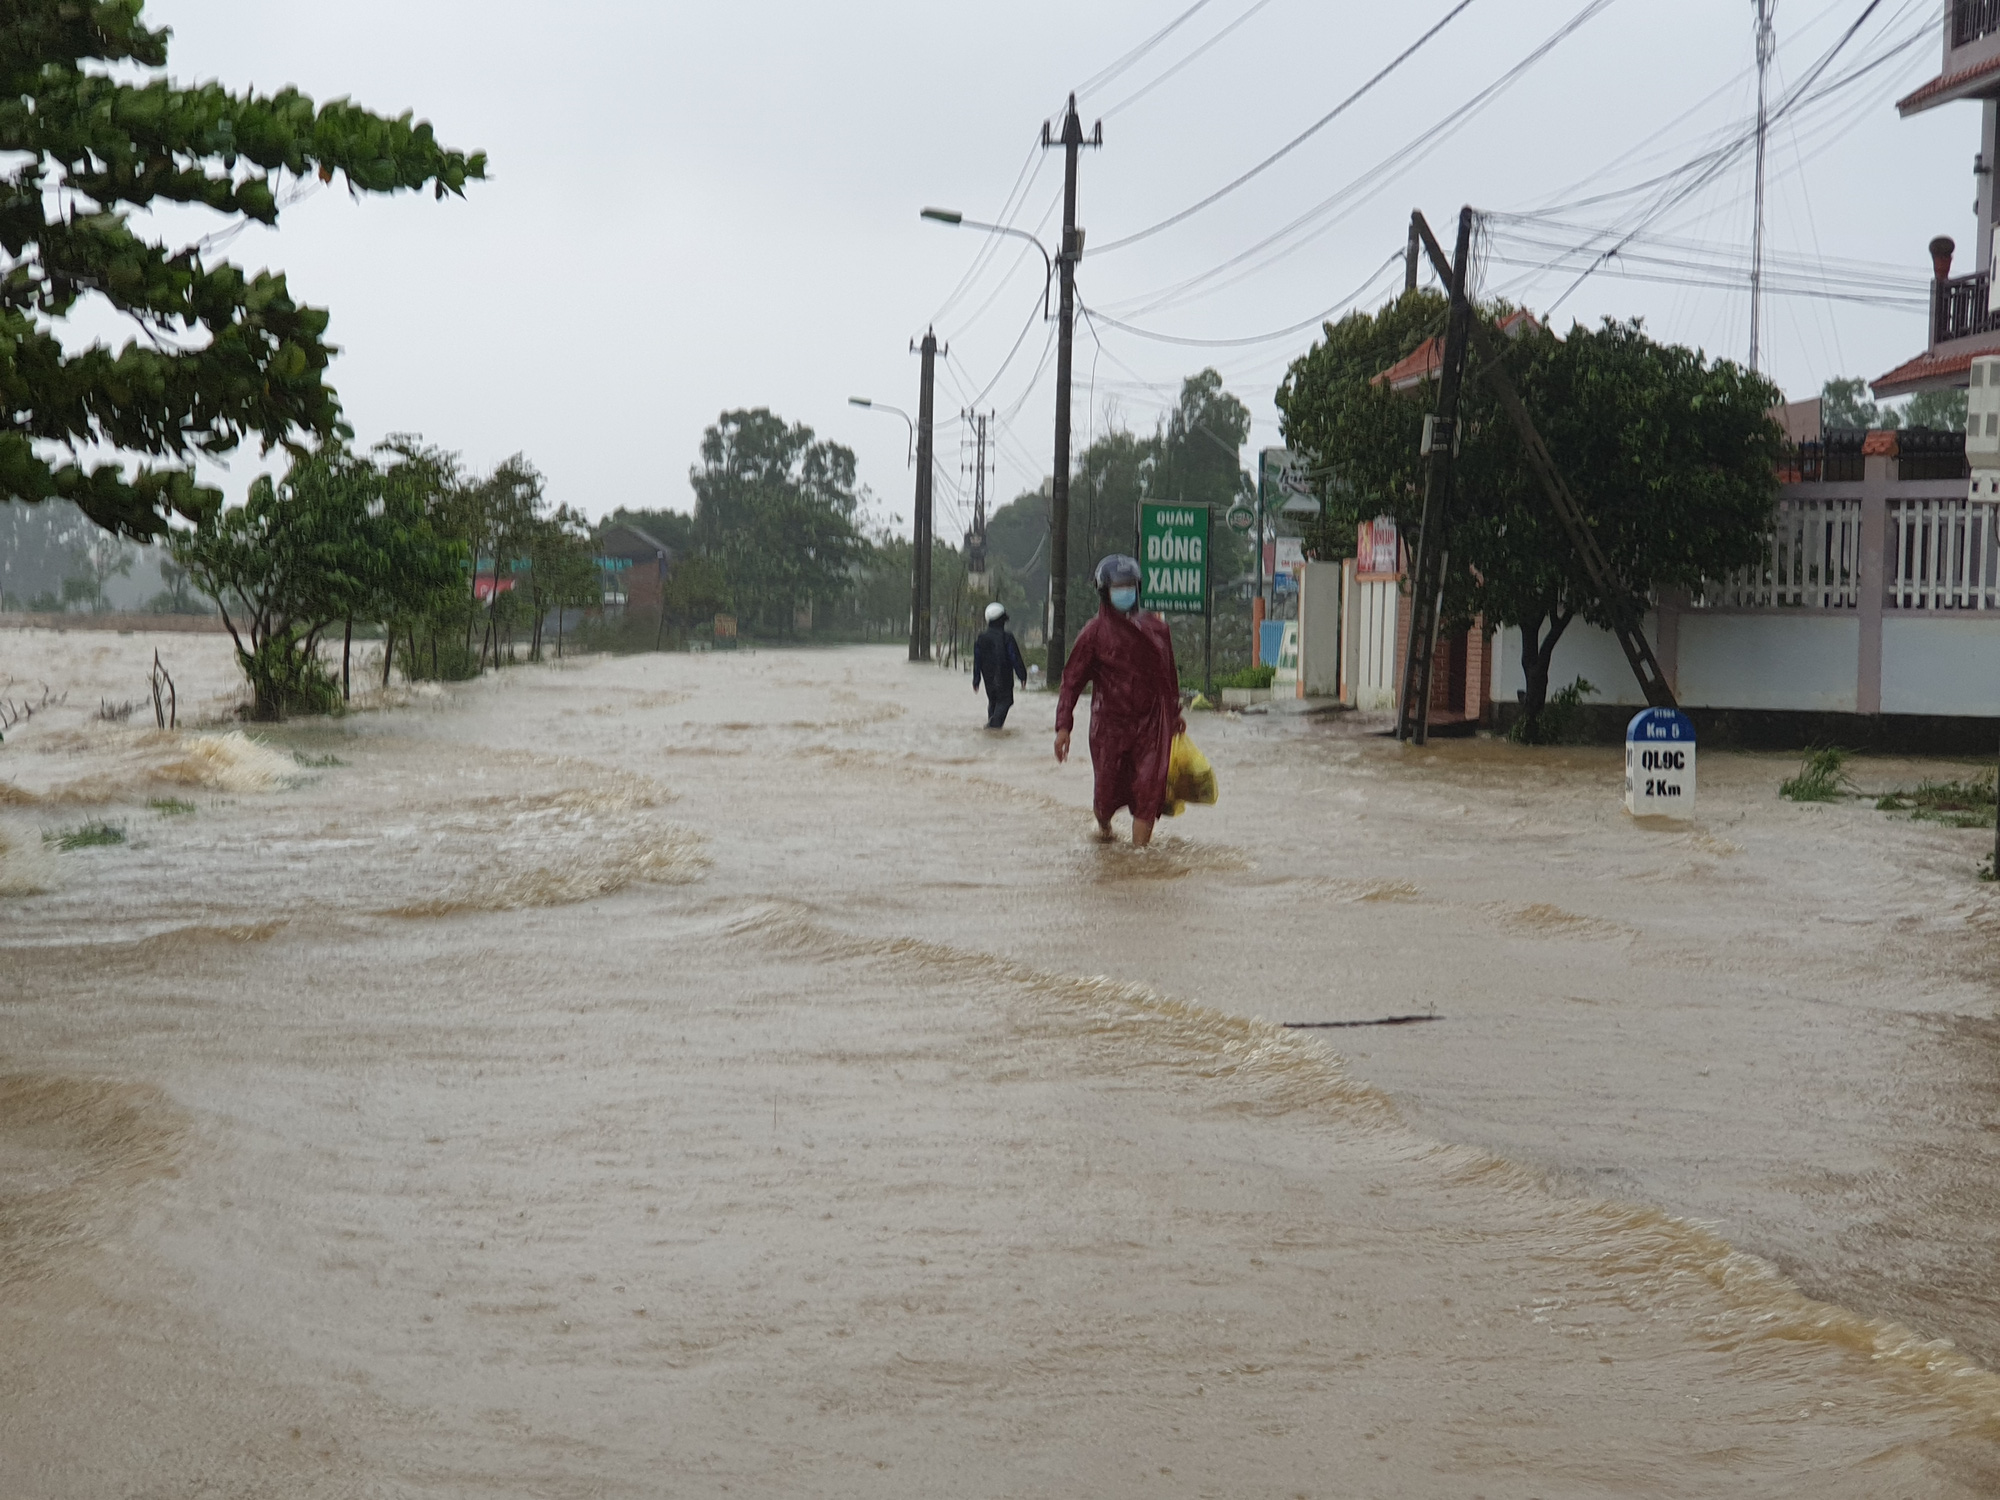 Quảng Bình: Mưa lớn, nhiều khu vực ngập trong biển nước - Ảnh 3.